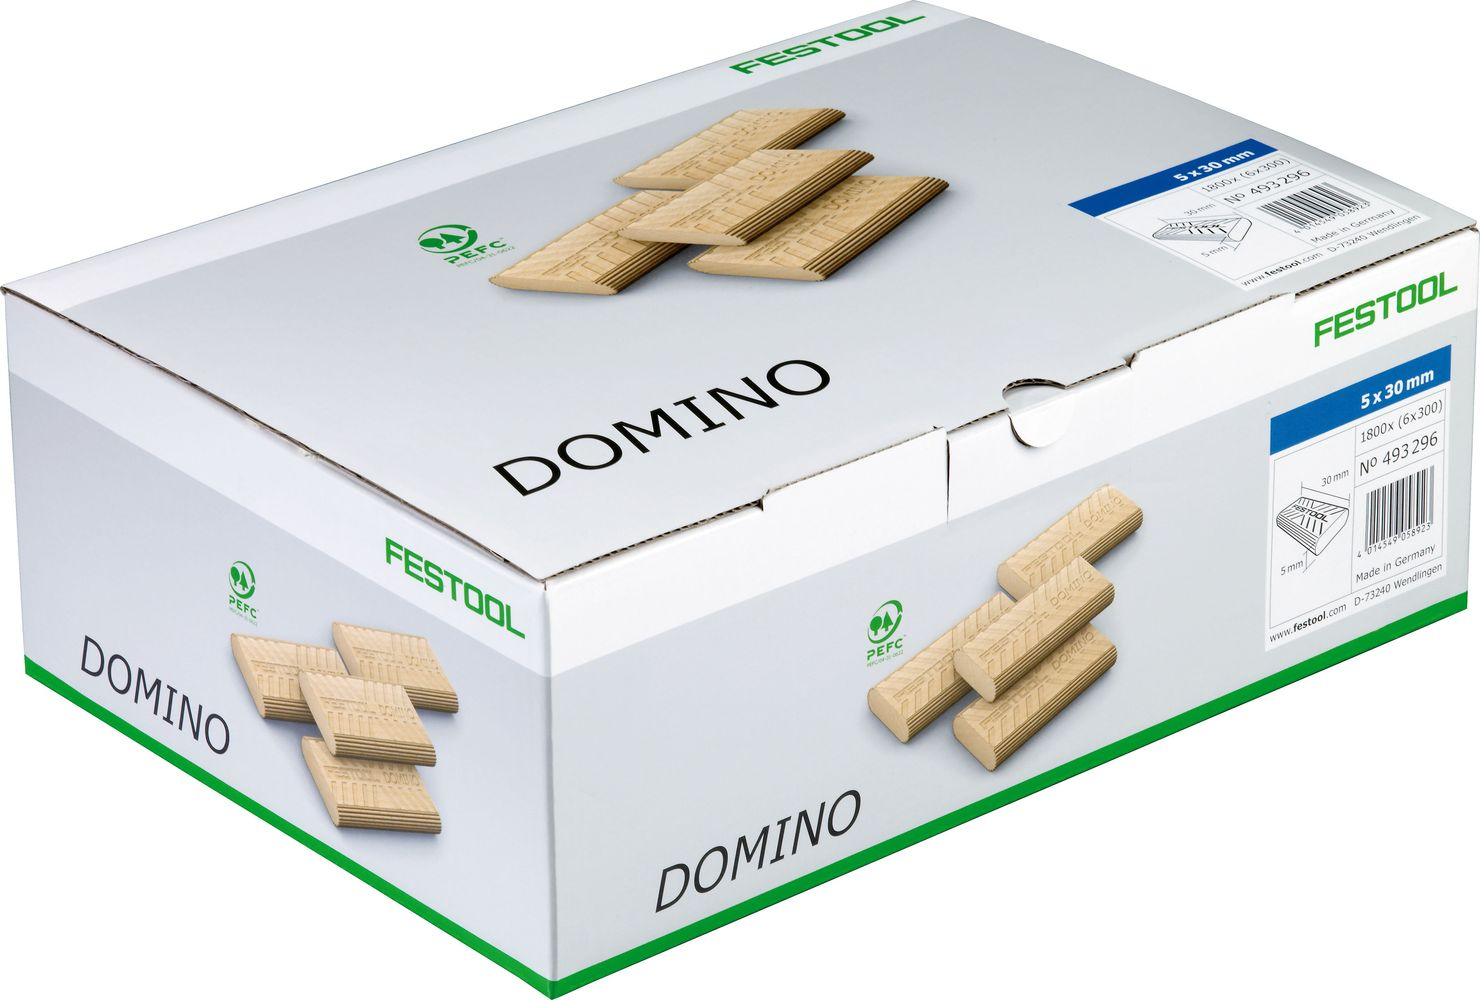 domino-en-hetre-8x40-780-bte-493298-festool-1